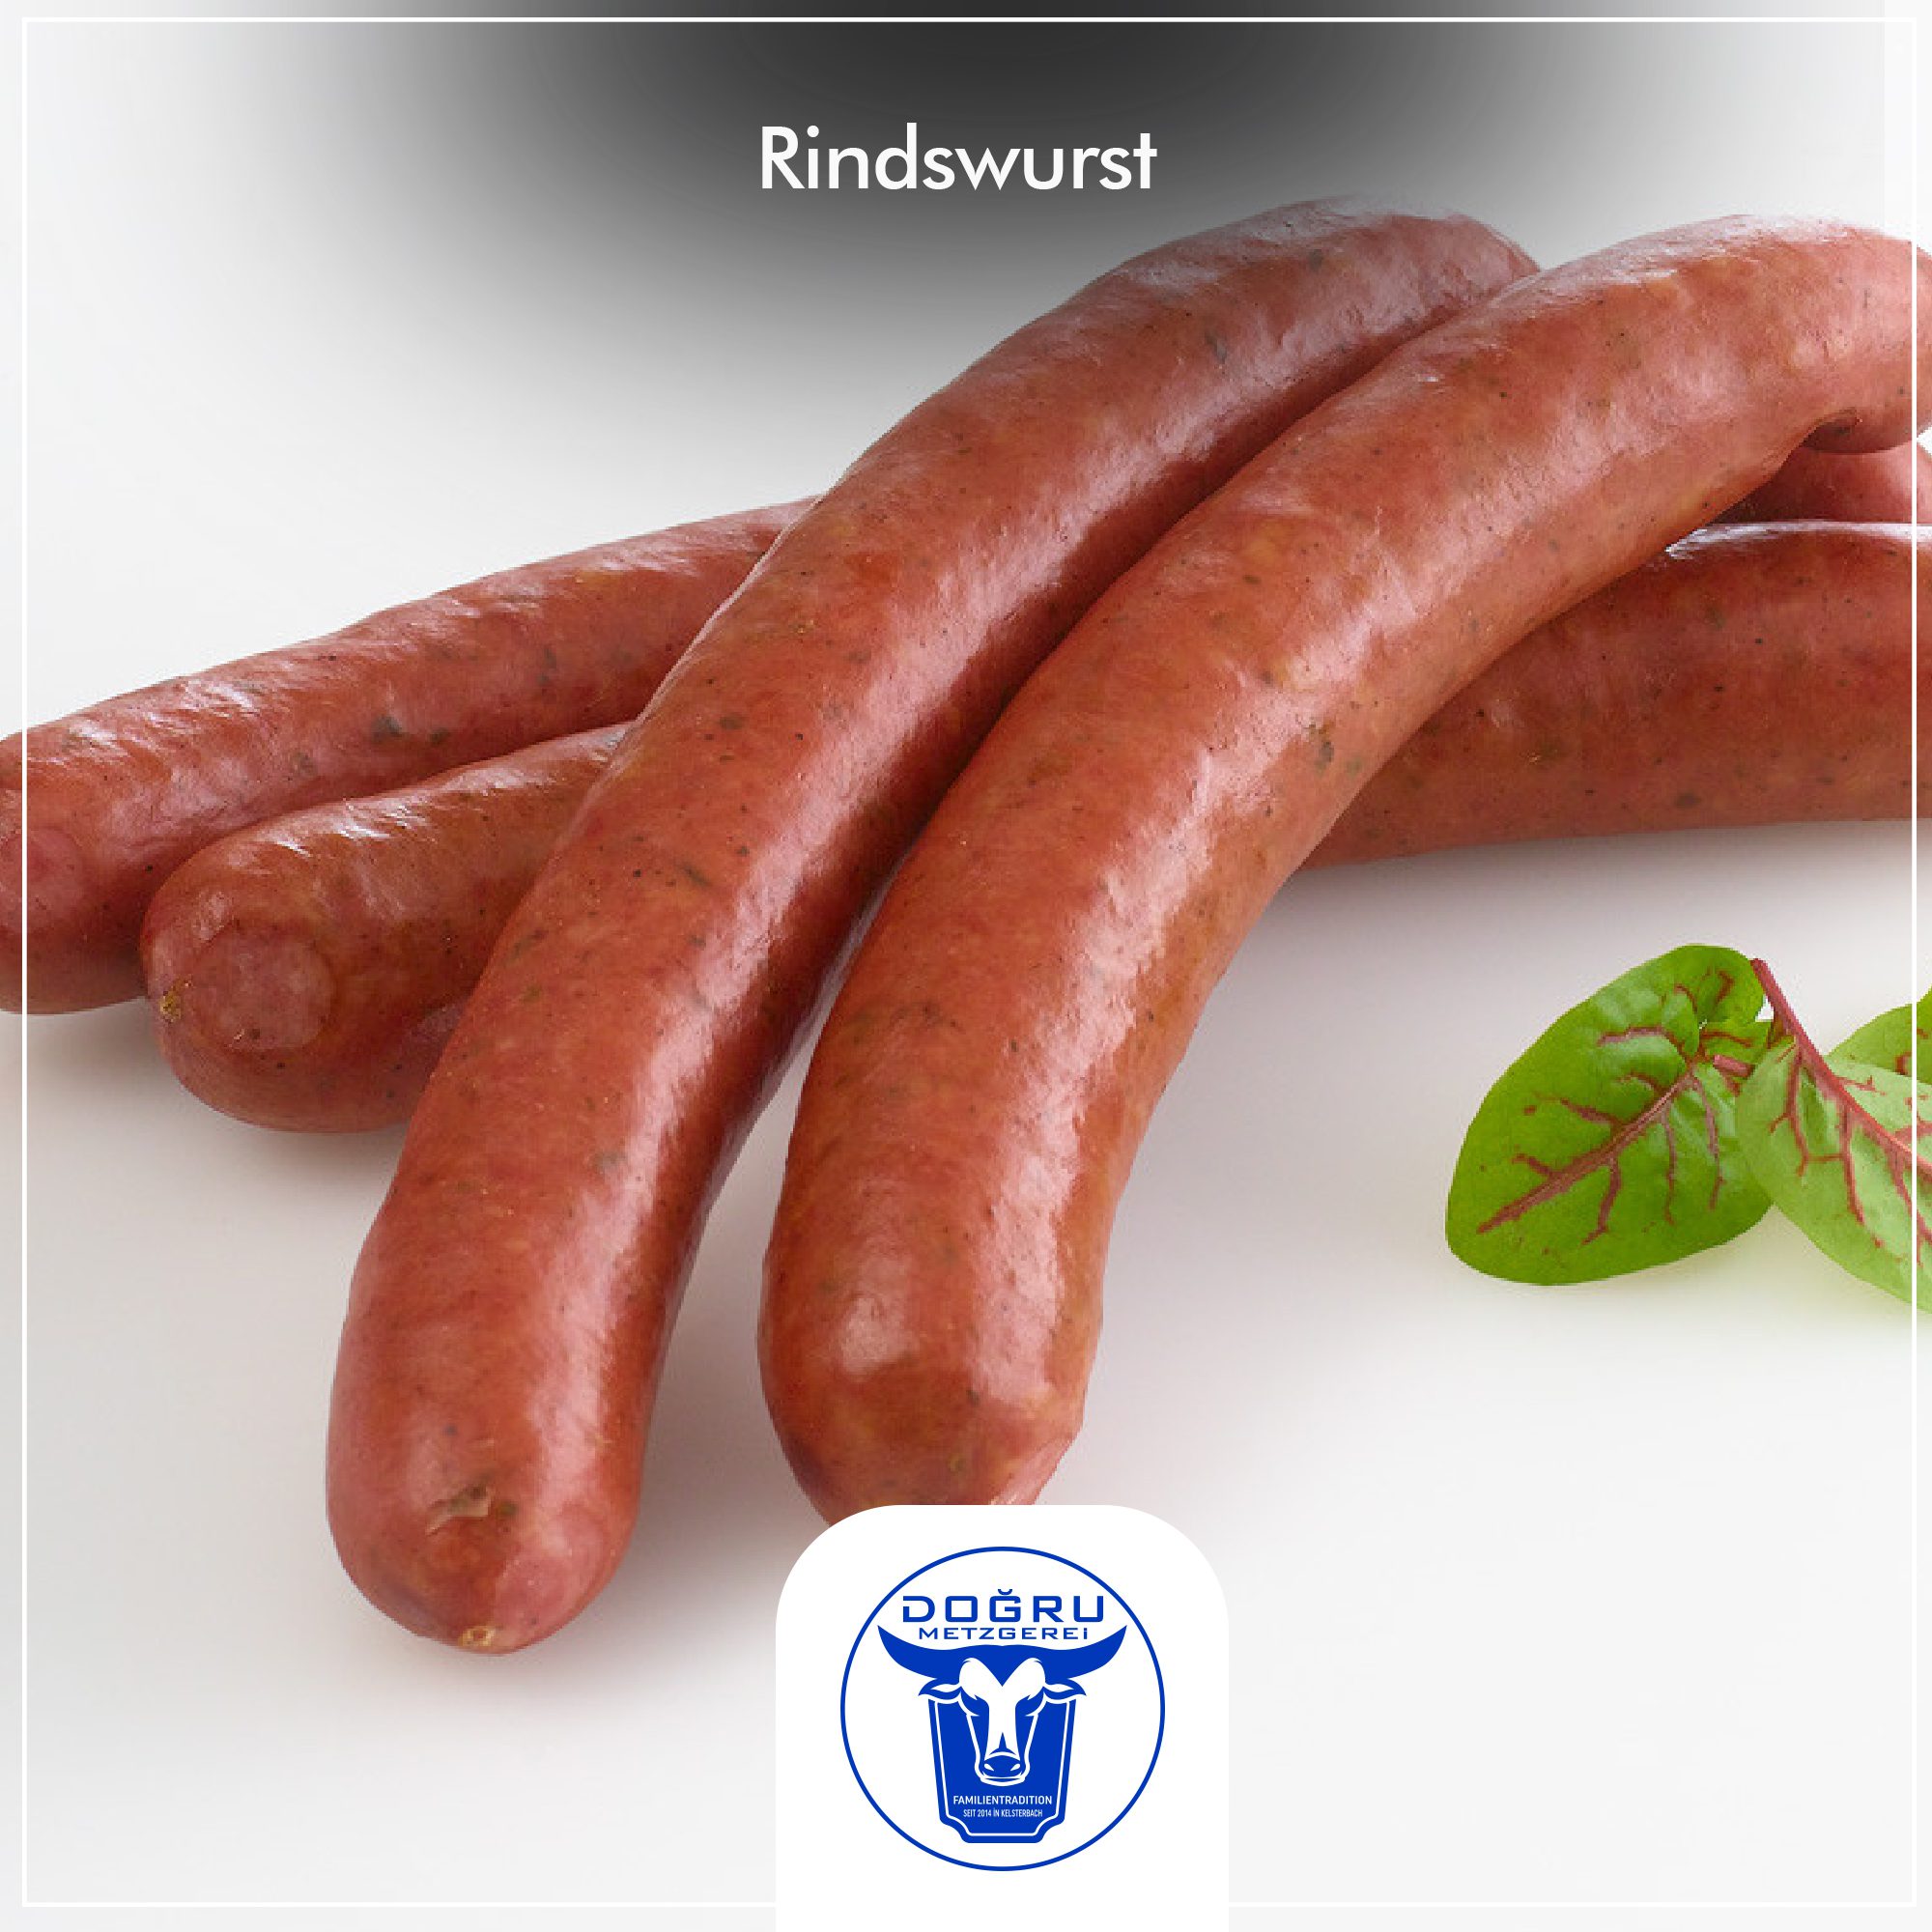 Rindswurst